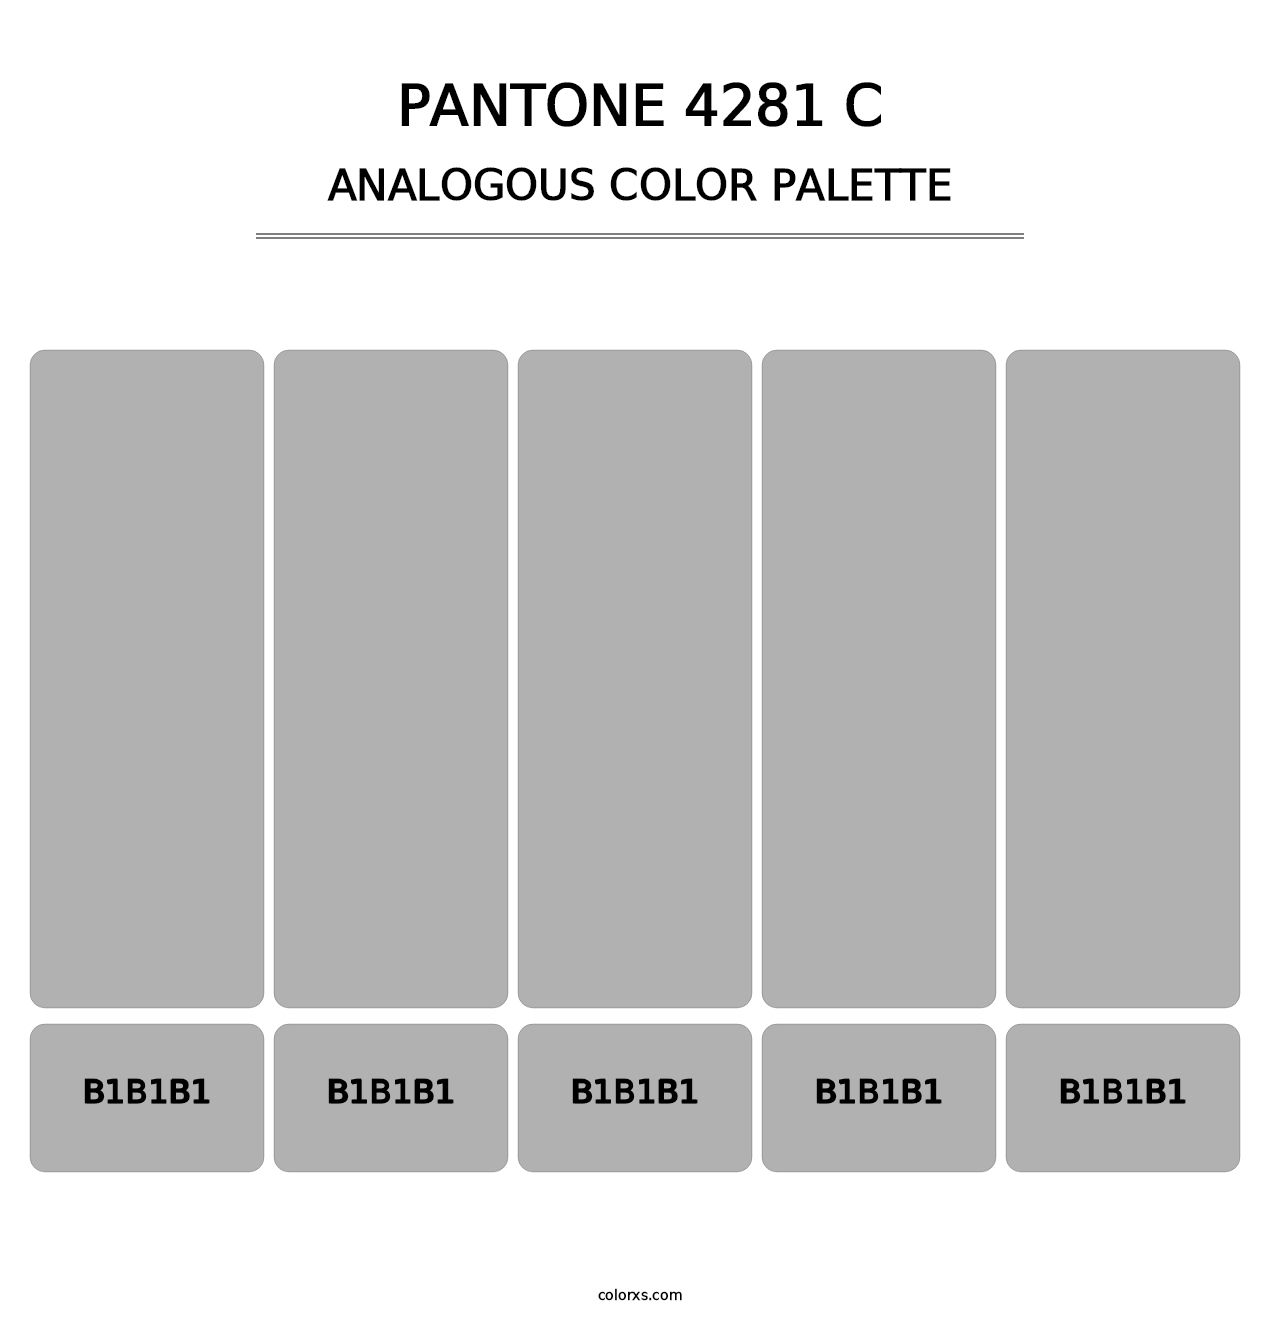 PANTONE 4281 C - Analogous Color Palette